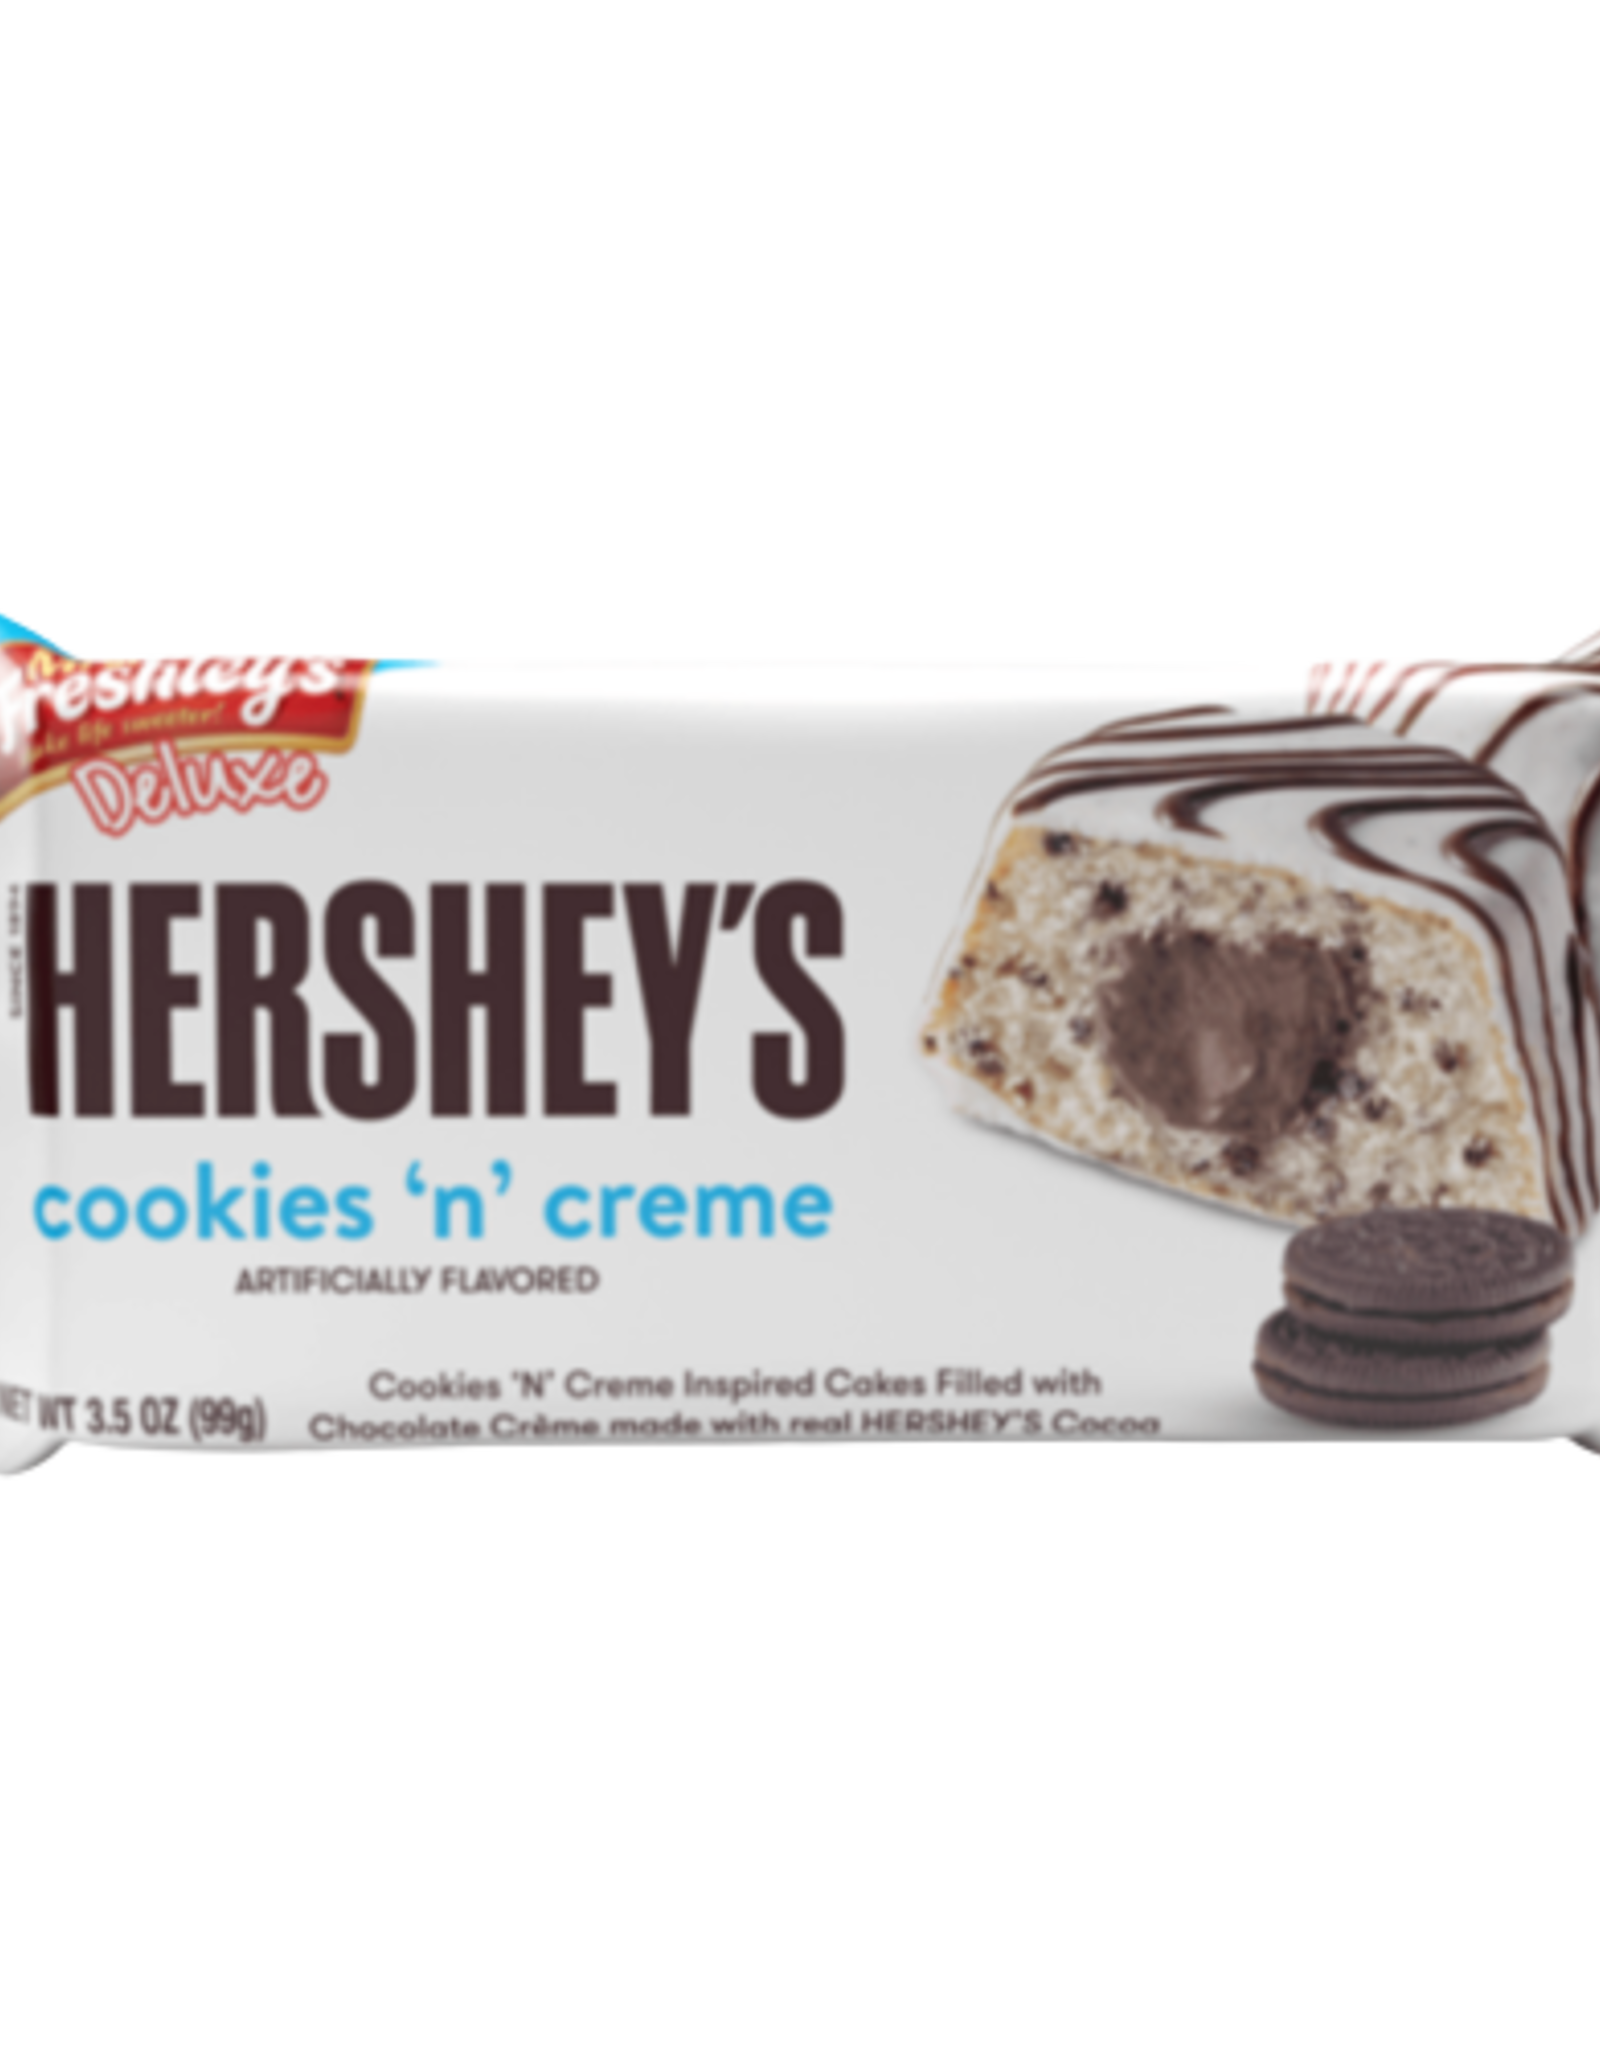 Mrs. Freshley’s Hershey Cookies ‘N’ Creme